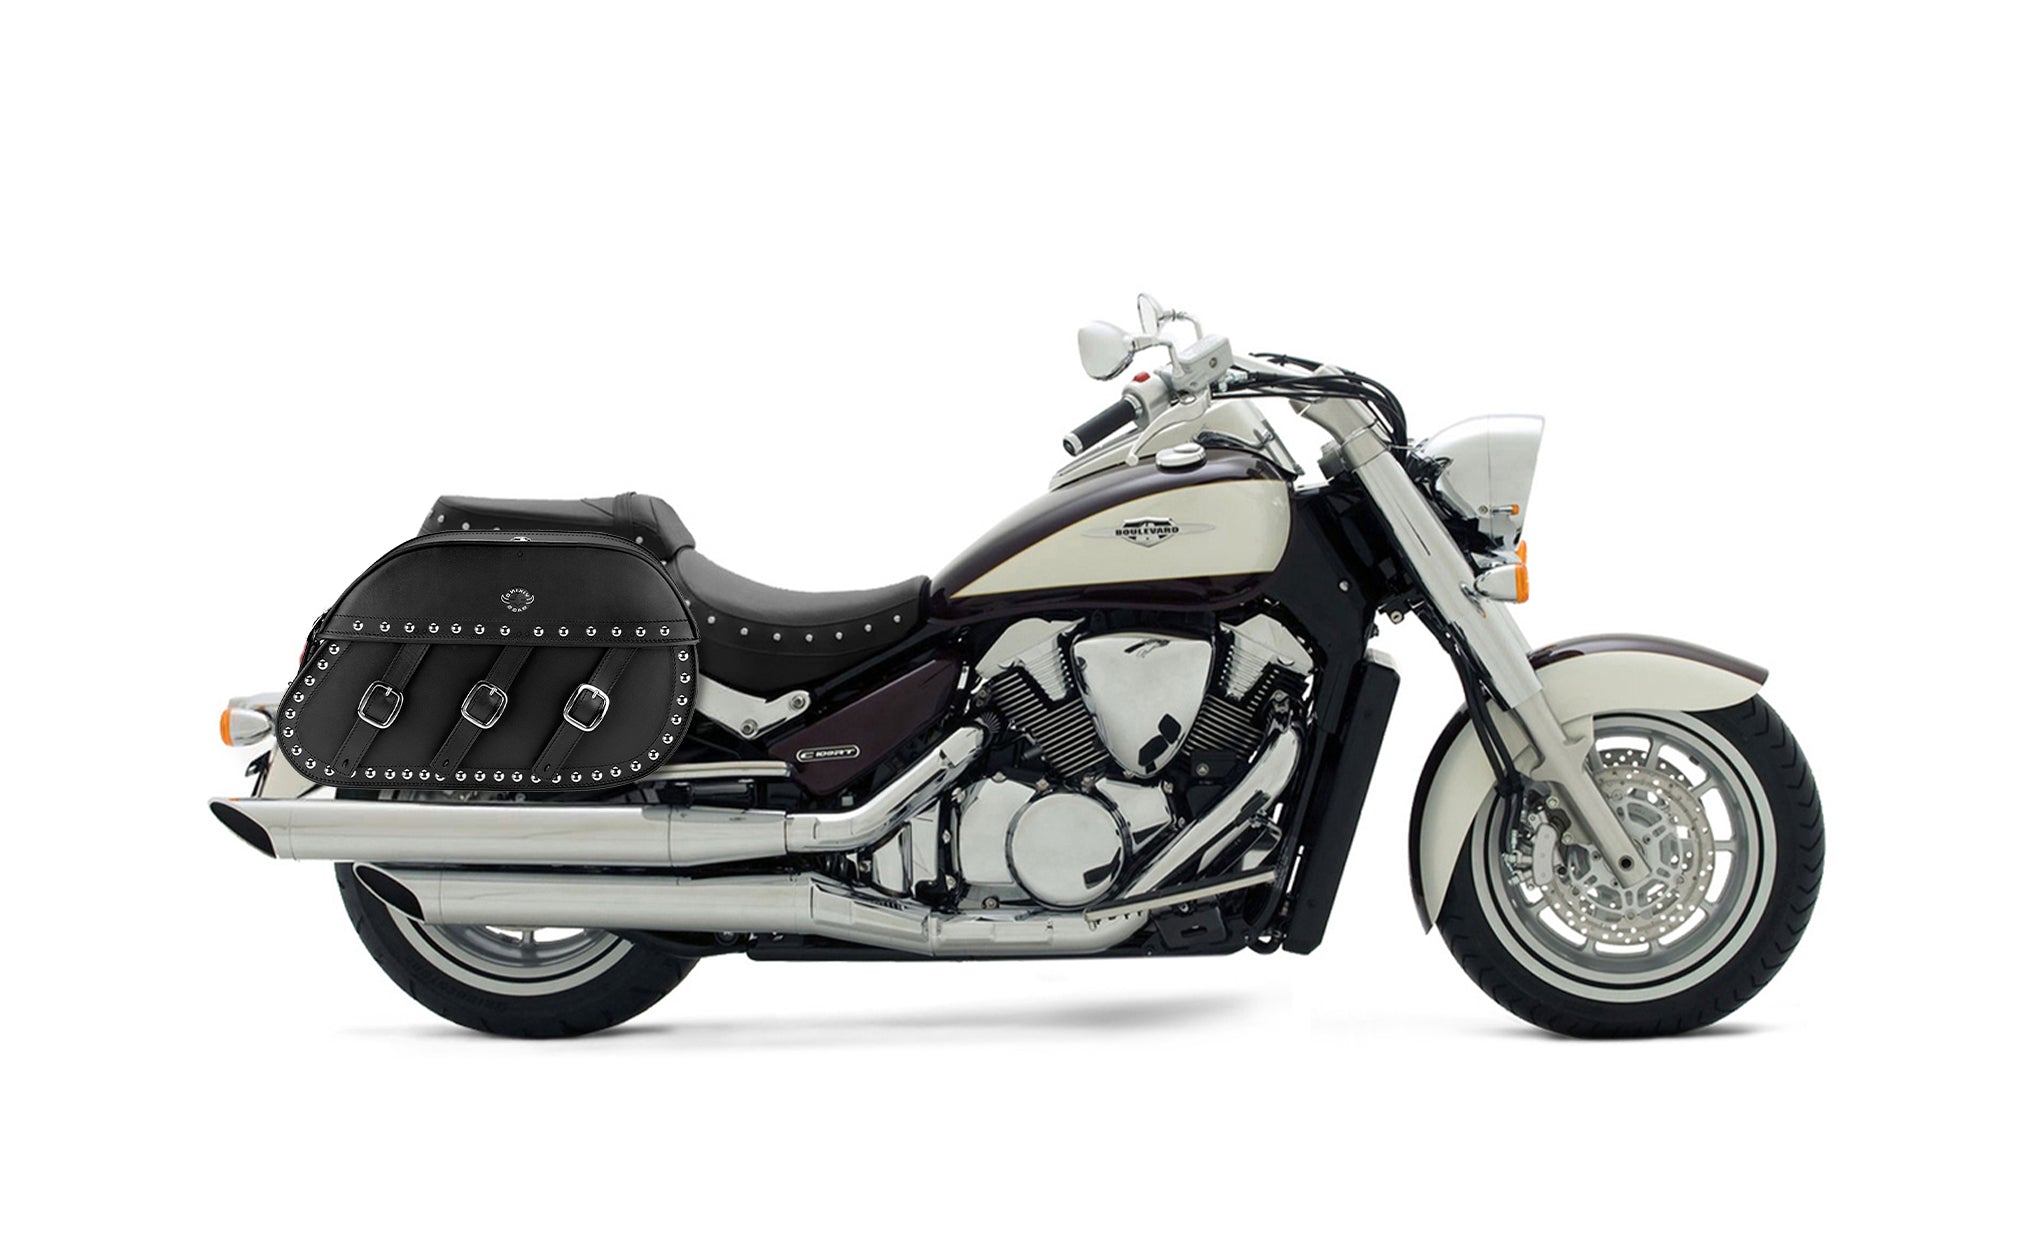 34L - Trianon Extra Large Suzuki Boulevard C109 Studded Leather Motorcycle Saddlebags on Bike Photo @expand